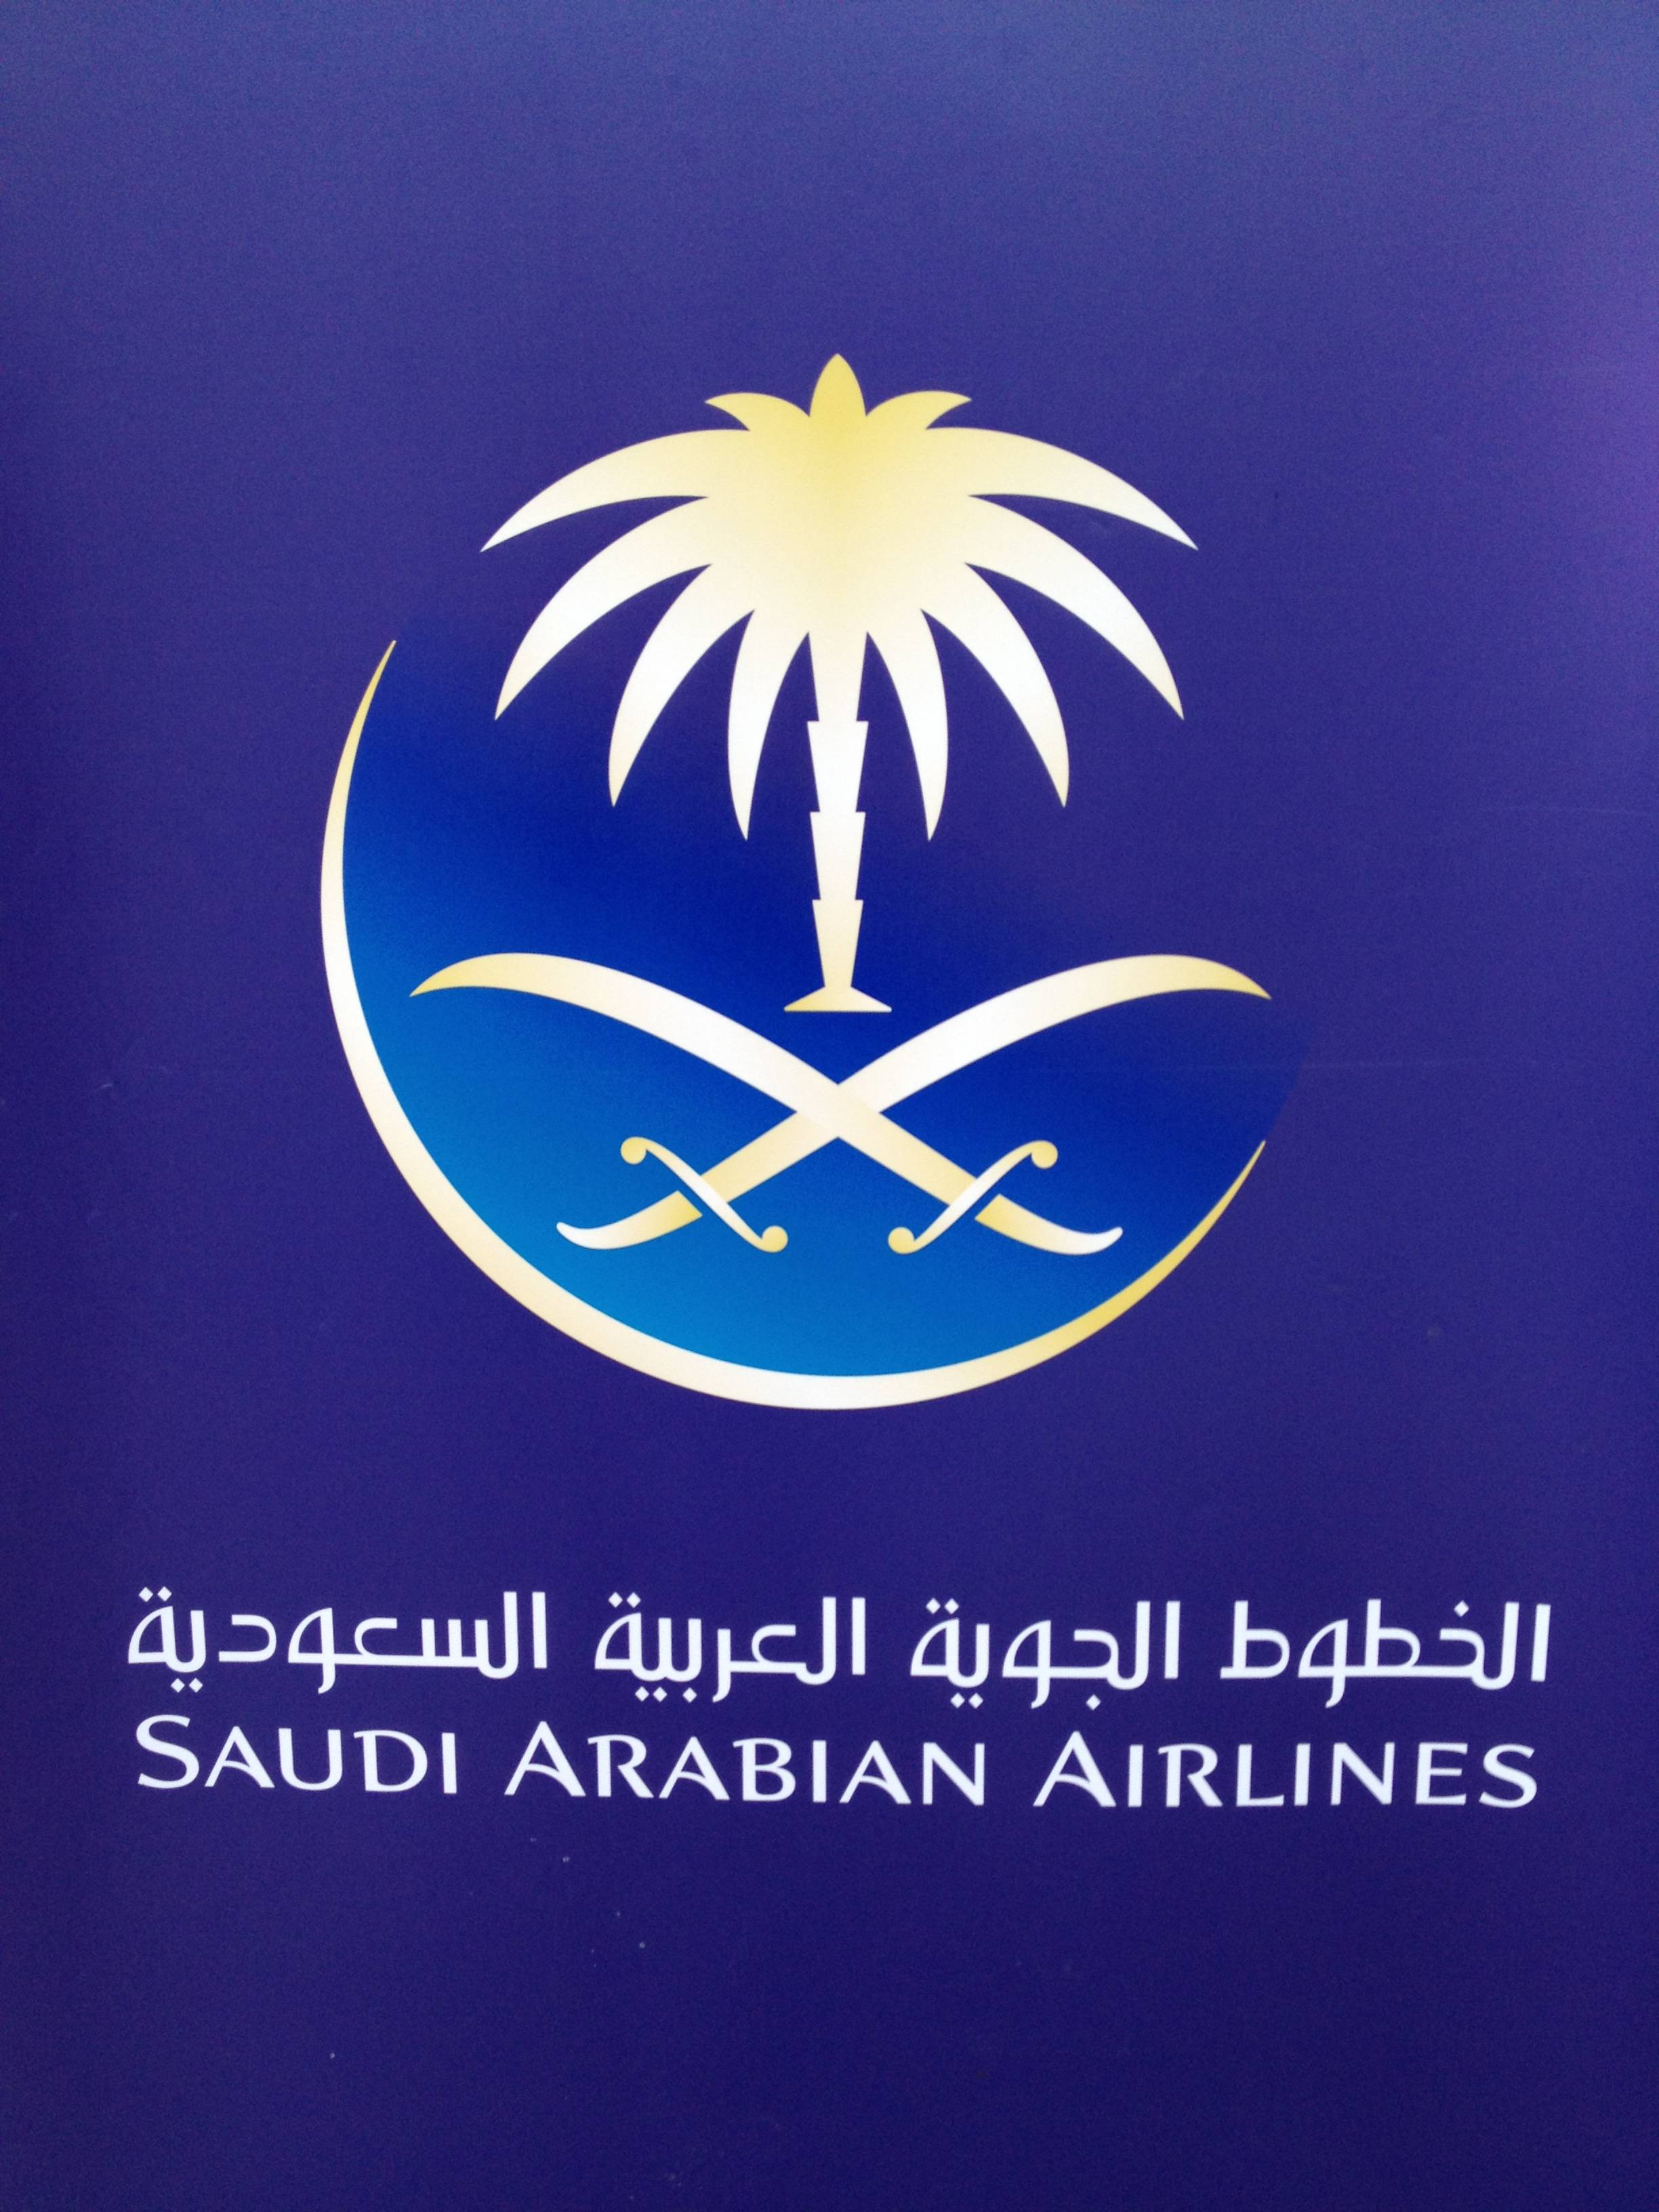 Arabic Airline Logo - Saudi Arabian Airlines Booking Office in Panjim, Goa